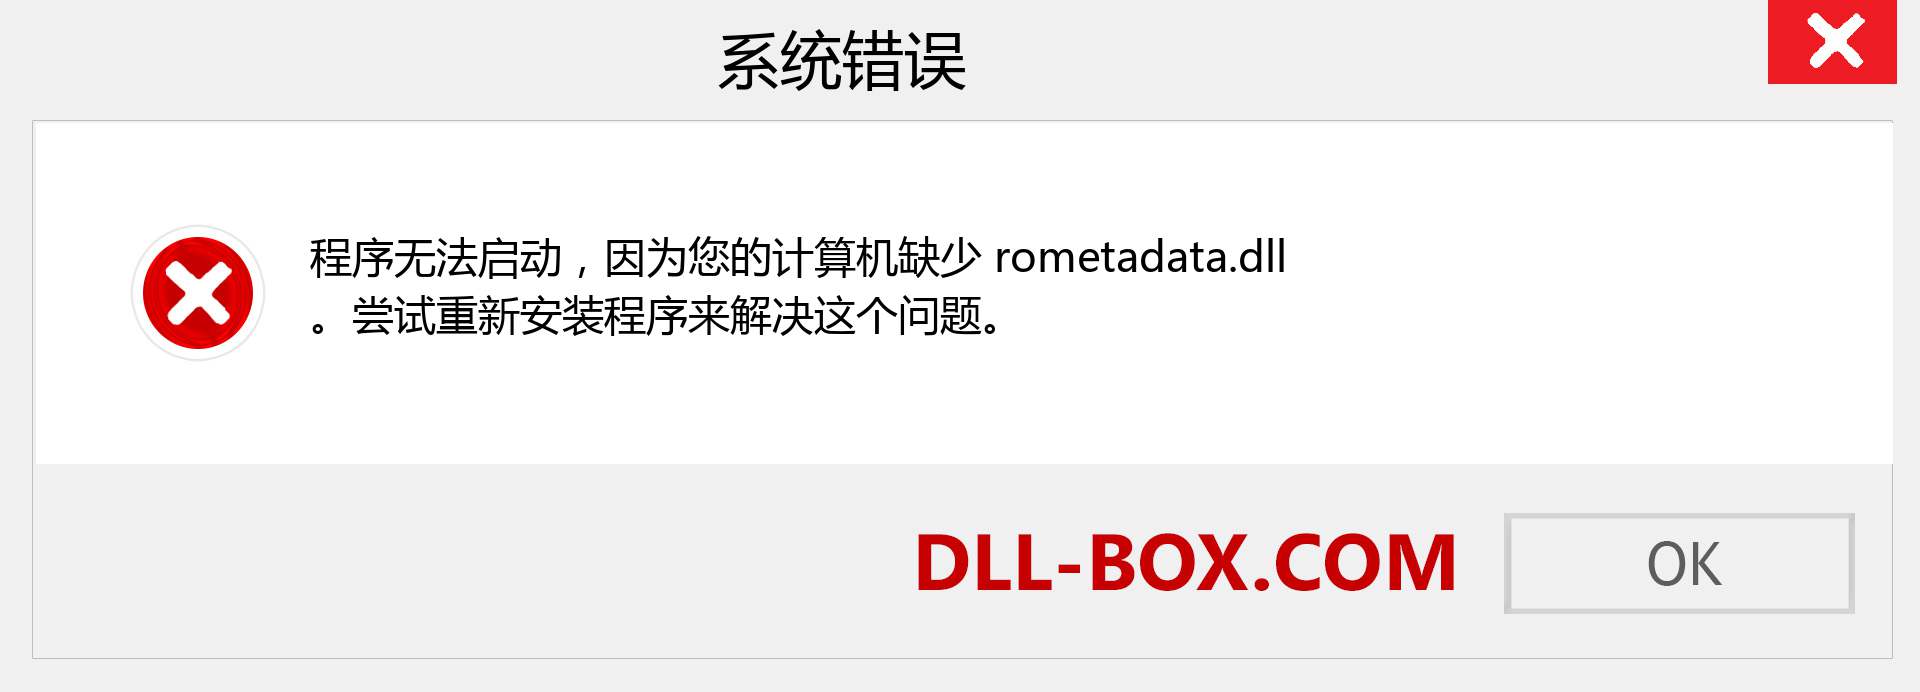 rometadata.dll 文件丢失？。 适用于 Windows 7、8、10 的下载 - 修复 Windows、照片、图像上的 rometadata dll 丢失错误